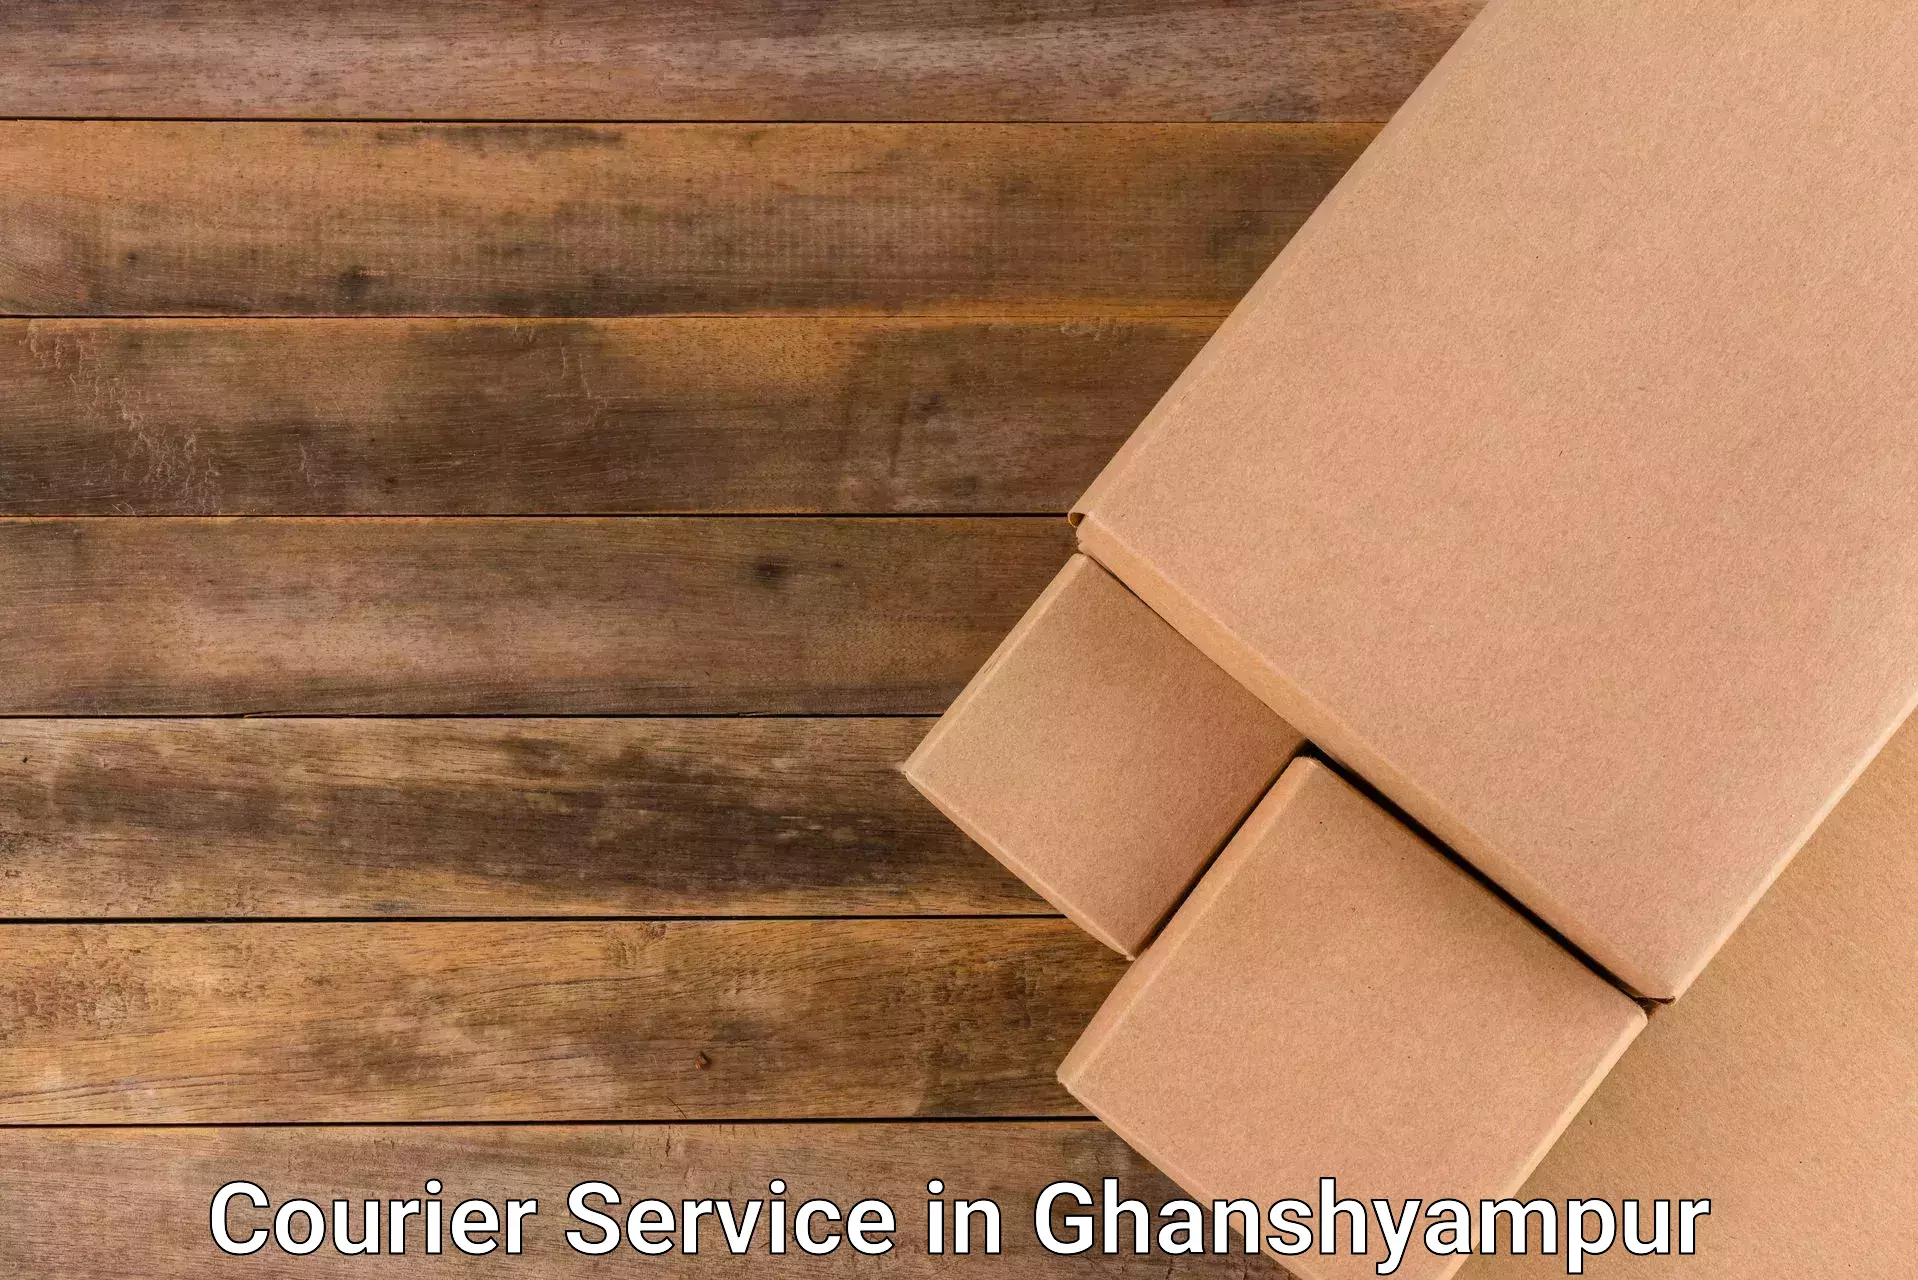 E-commerce fulfillment in Ghanshyampur